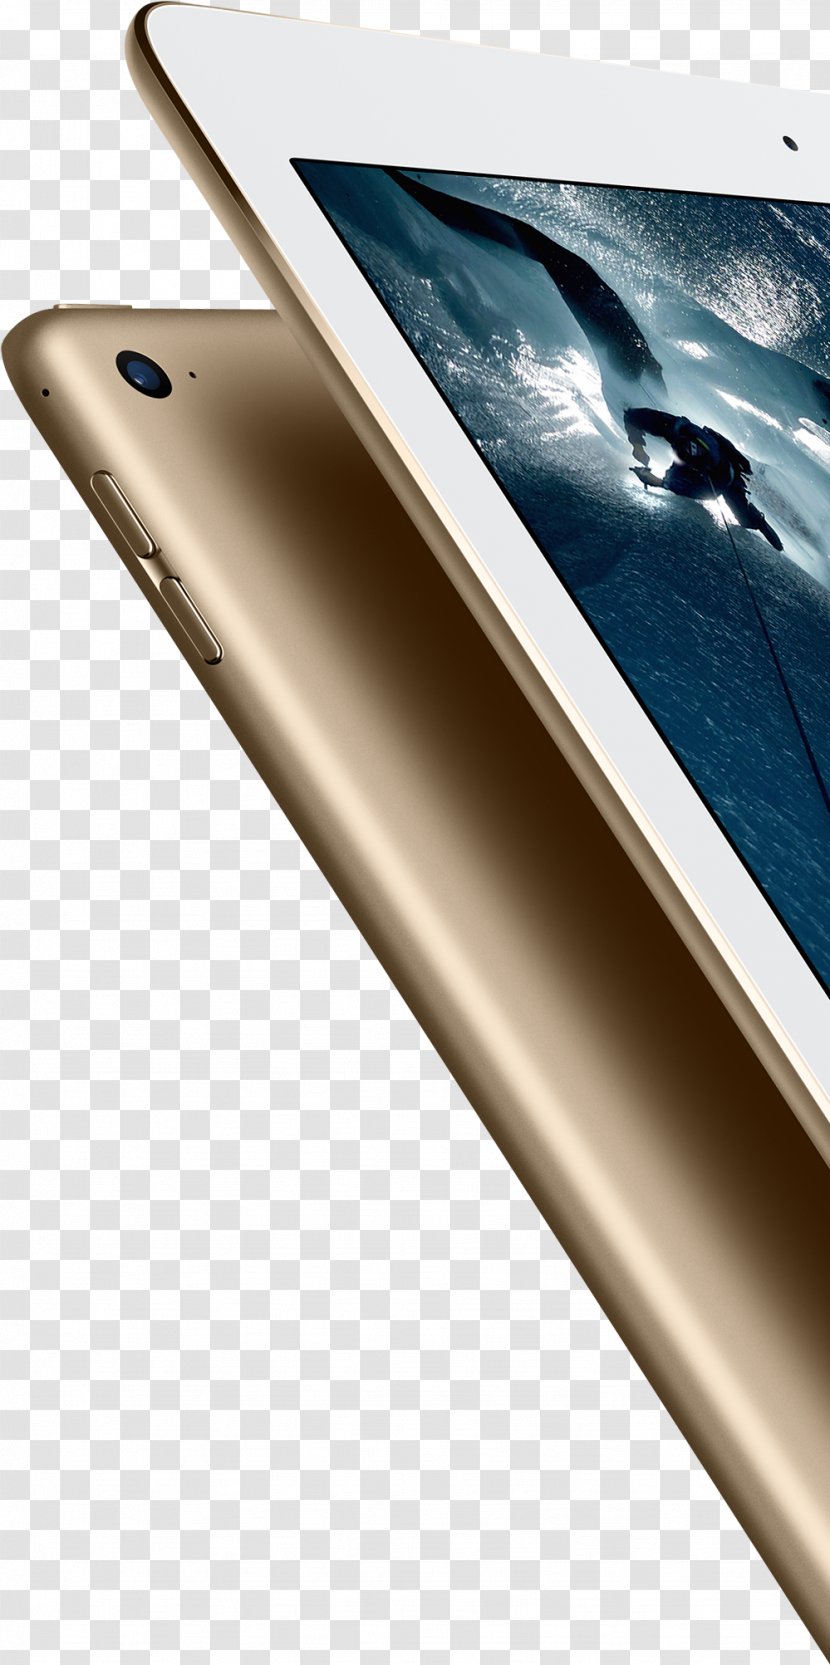 IPad Pro (12.9-inch) (2nd Generation) Mini Apple 256GB 3G 4G Gold Tablet MLQ82B/A - Wifi - Ipad Transparent PNG